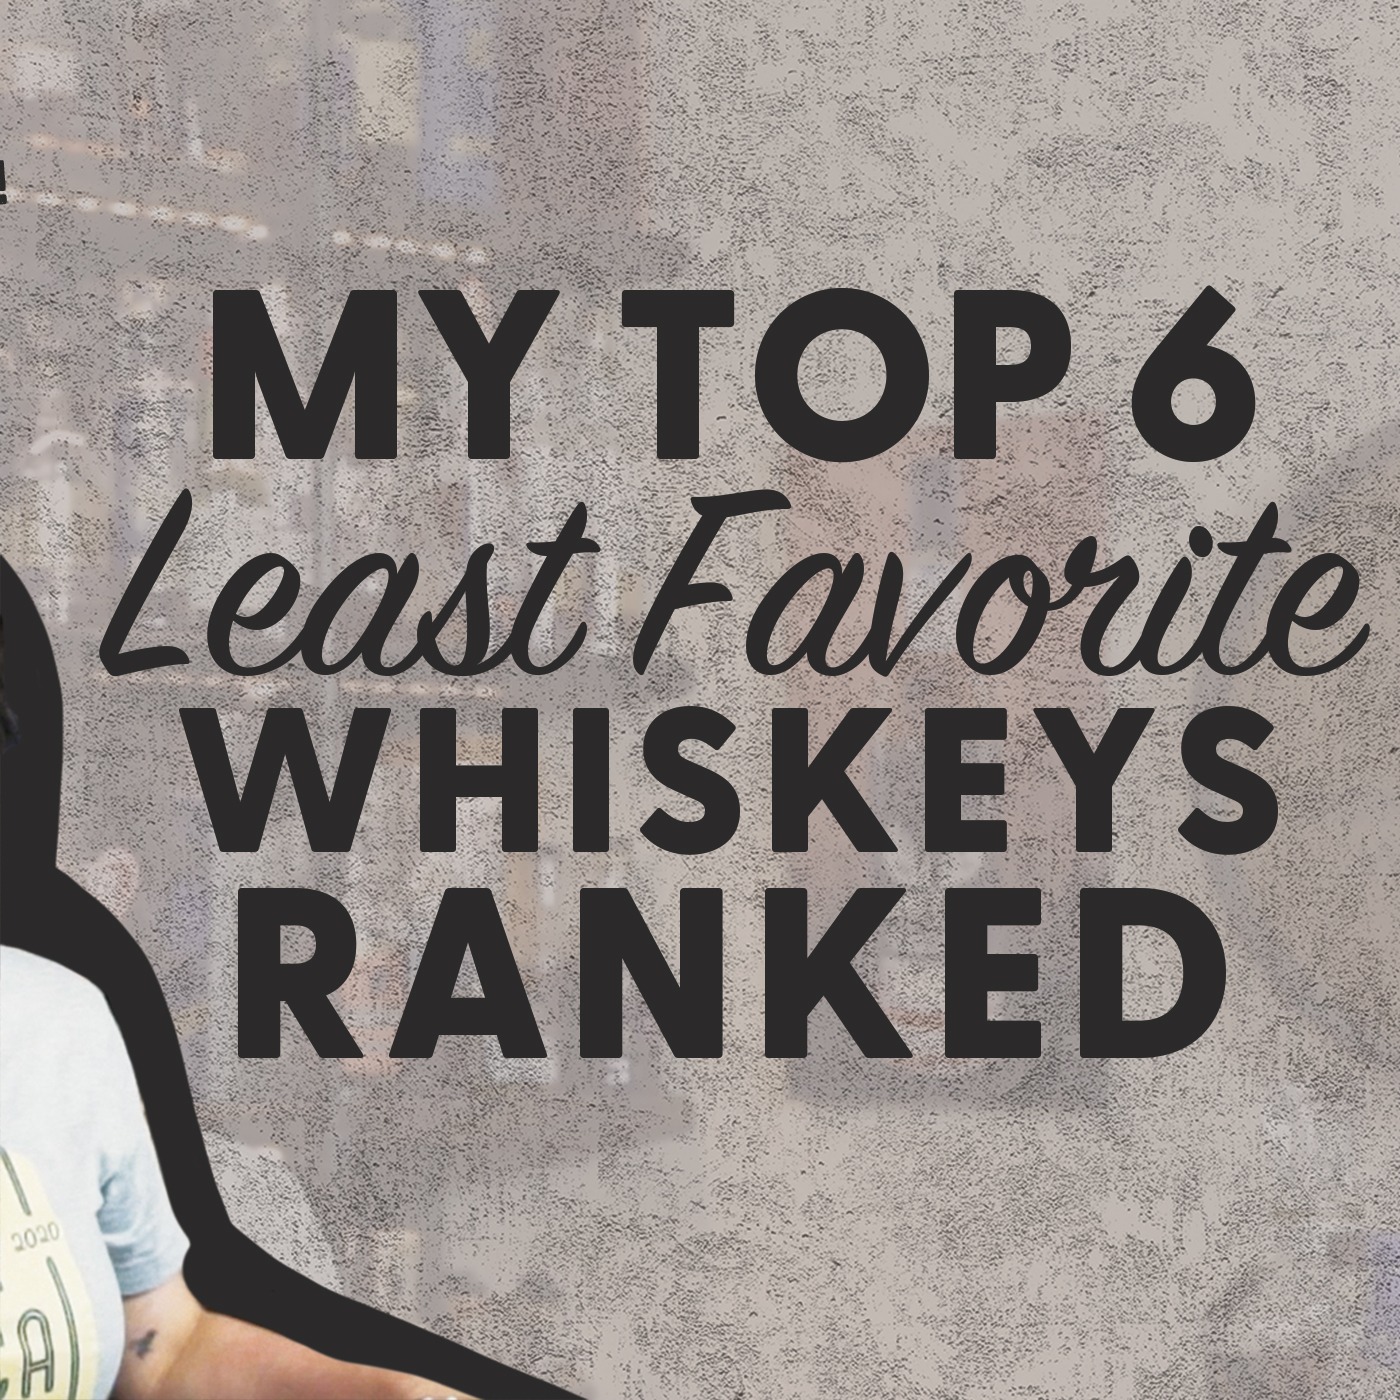 My TOP 6 Least Favorite Whiskeys Ranked (BLIND)